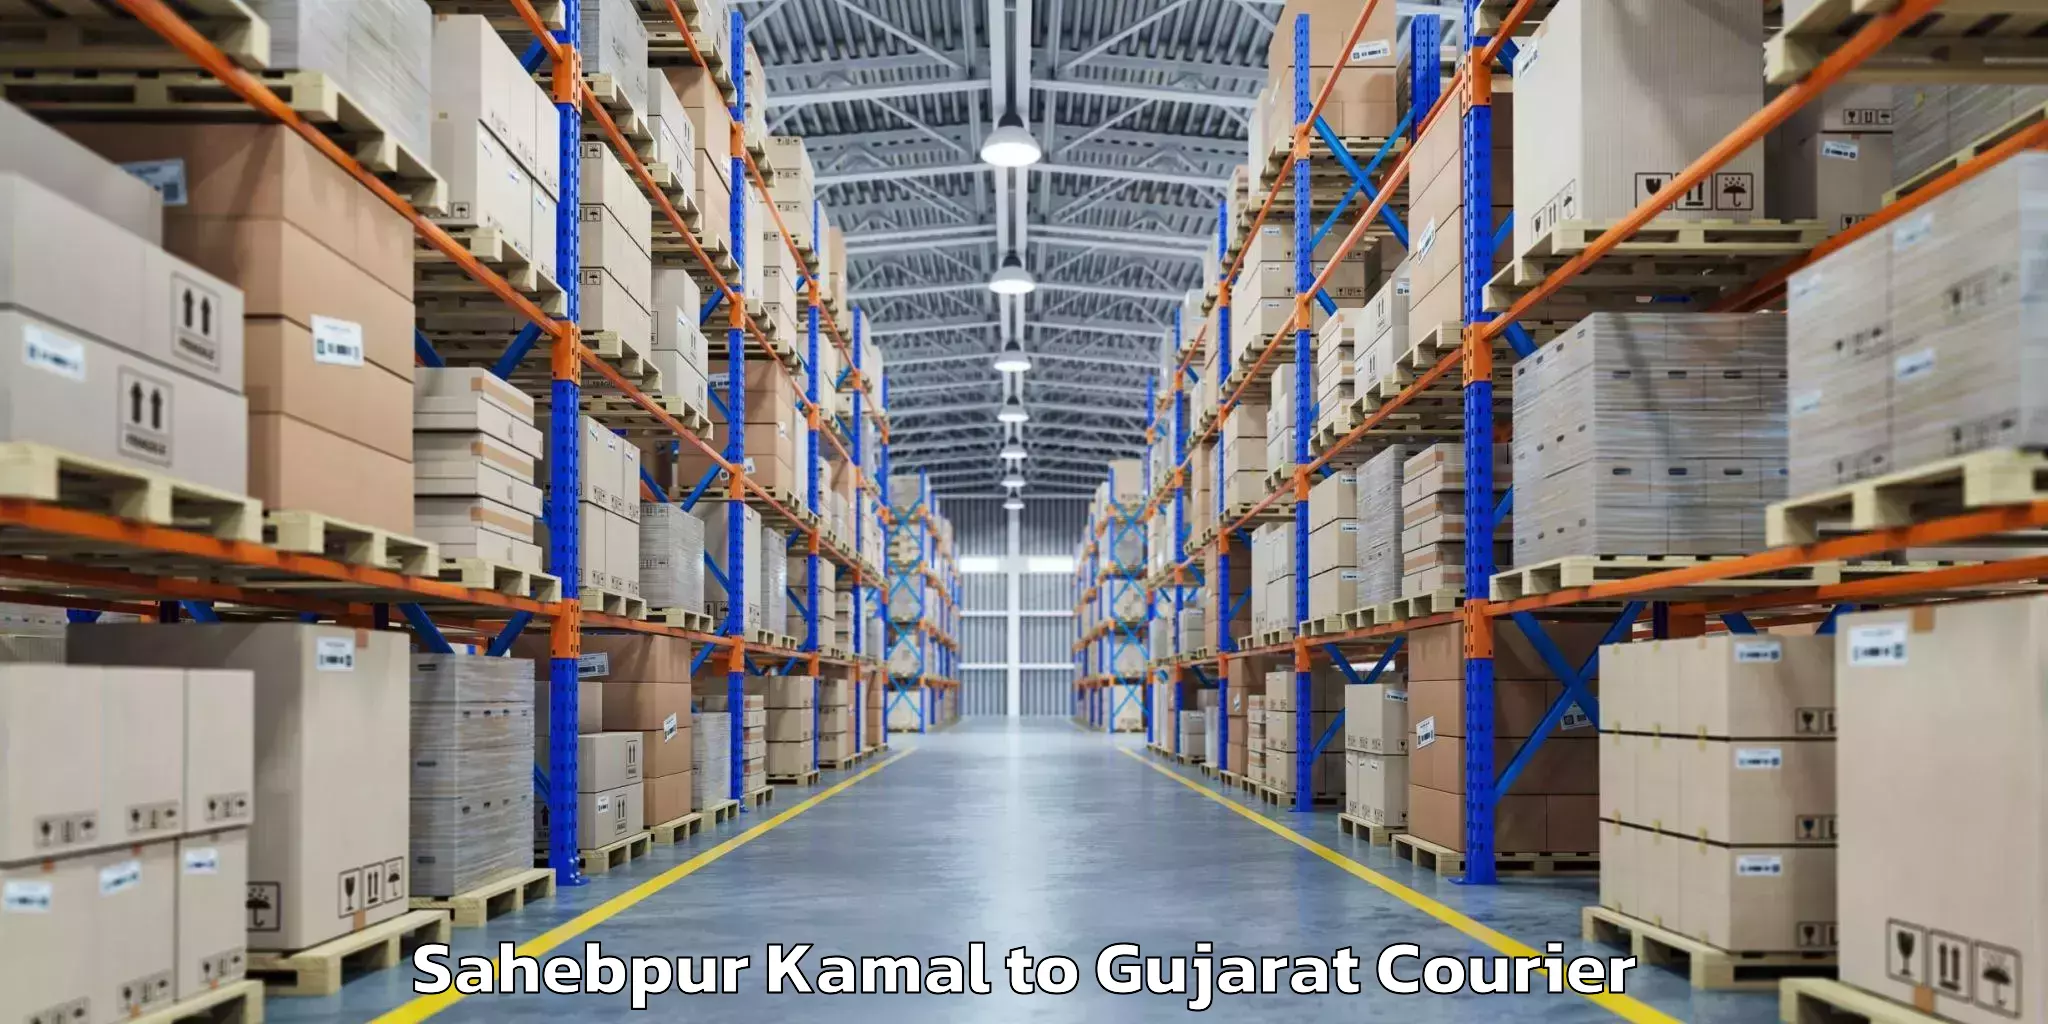 Baggage transport updates Sahebpur Kamal to Gujarat